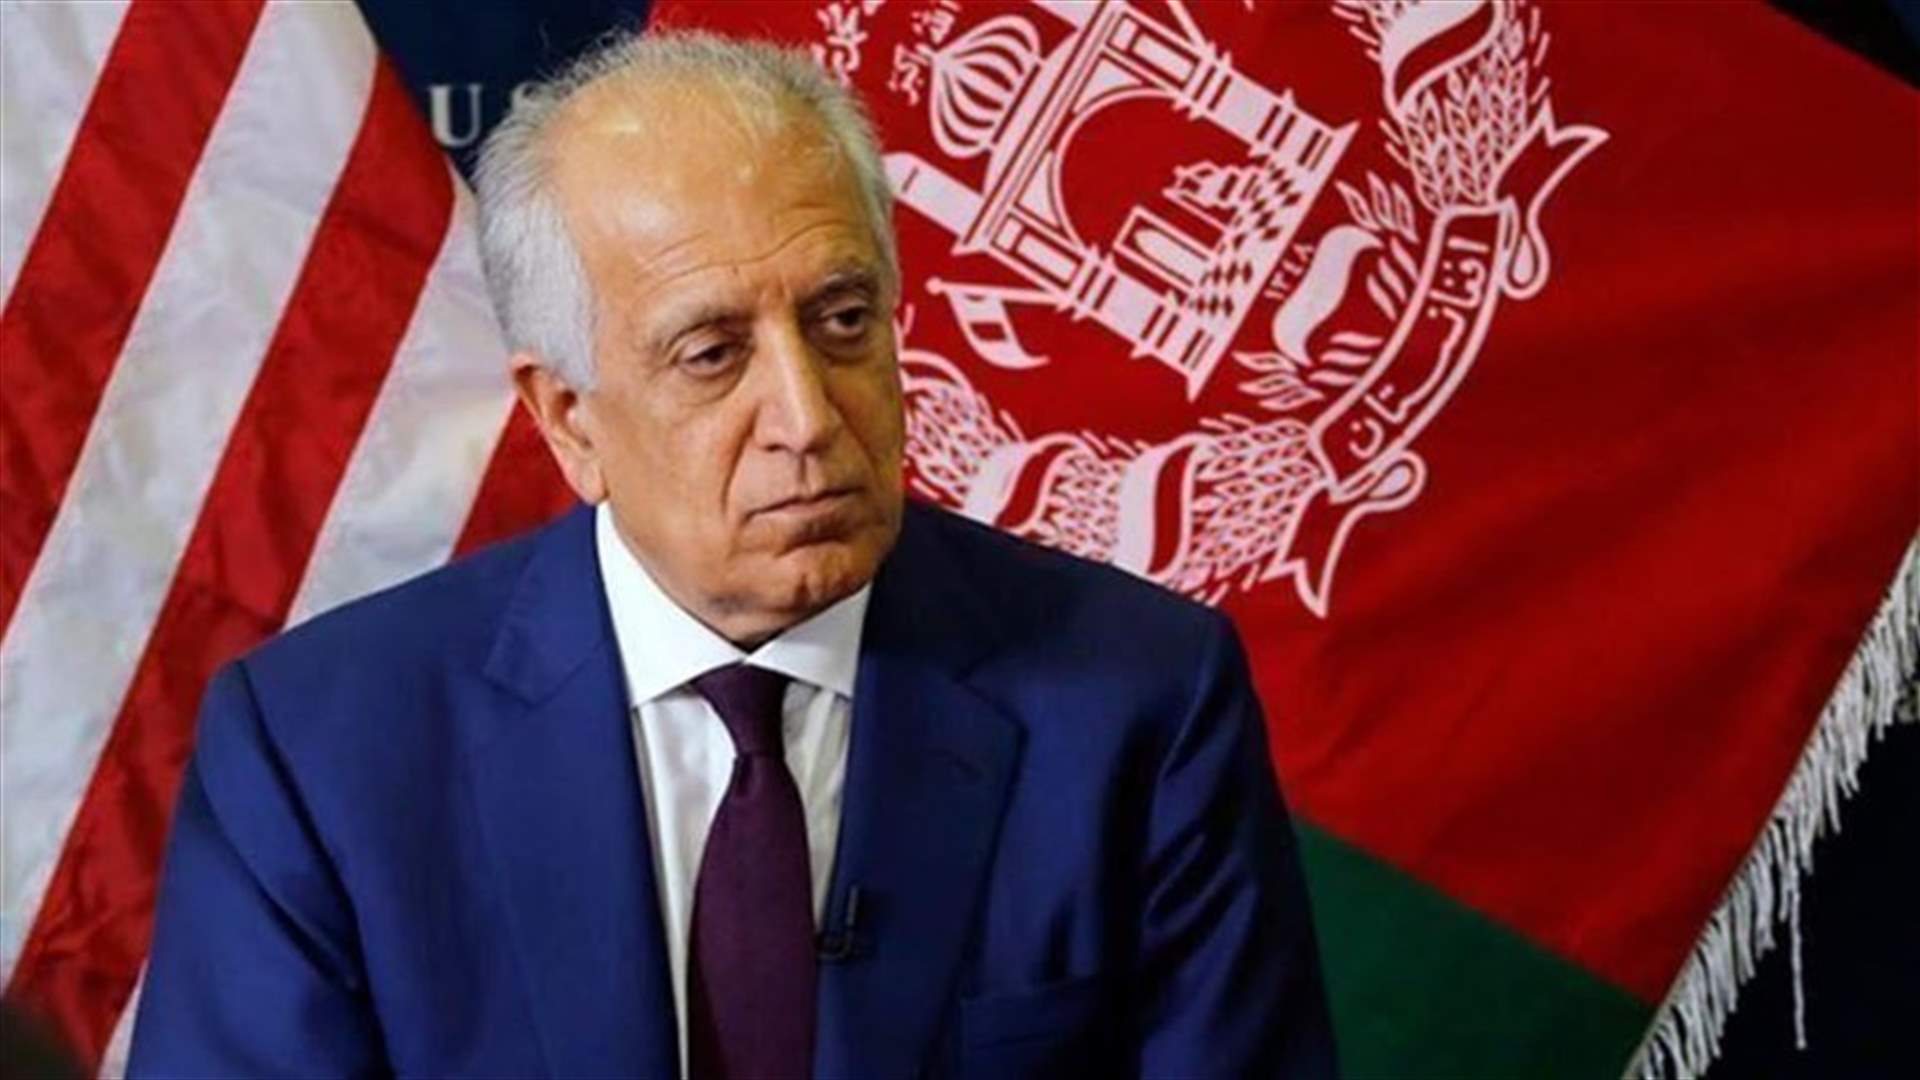 المبعوث الأميركي الخاص لأفغانستان خليل زاد يؤكد تنحيه عن منصبه